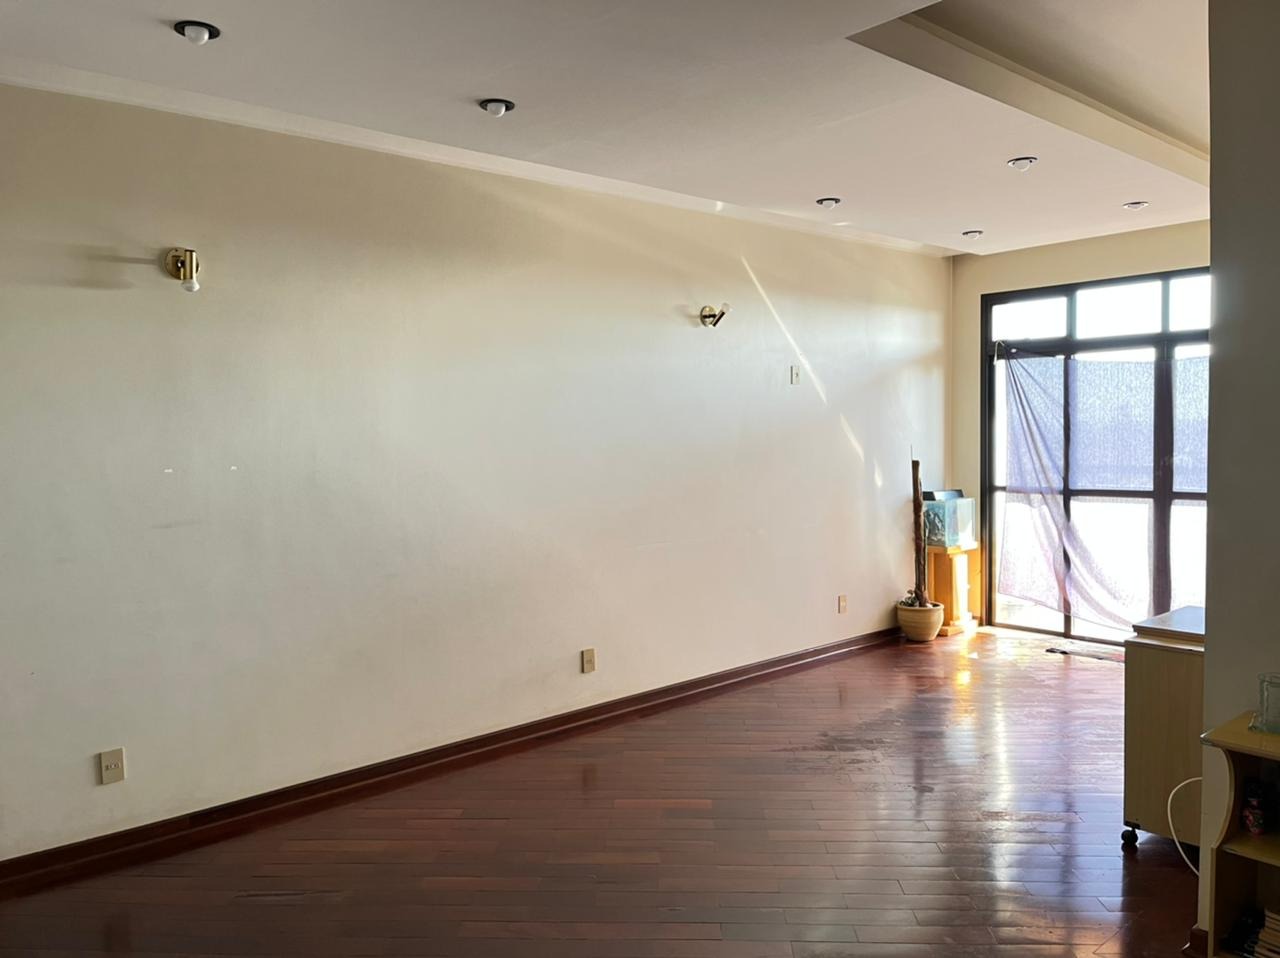 Apartamento à venda, 3 quartos, 1 suíte, 1 vaga, no bairro Cidade Alta em Piracicaba - SP